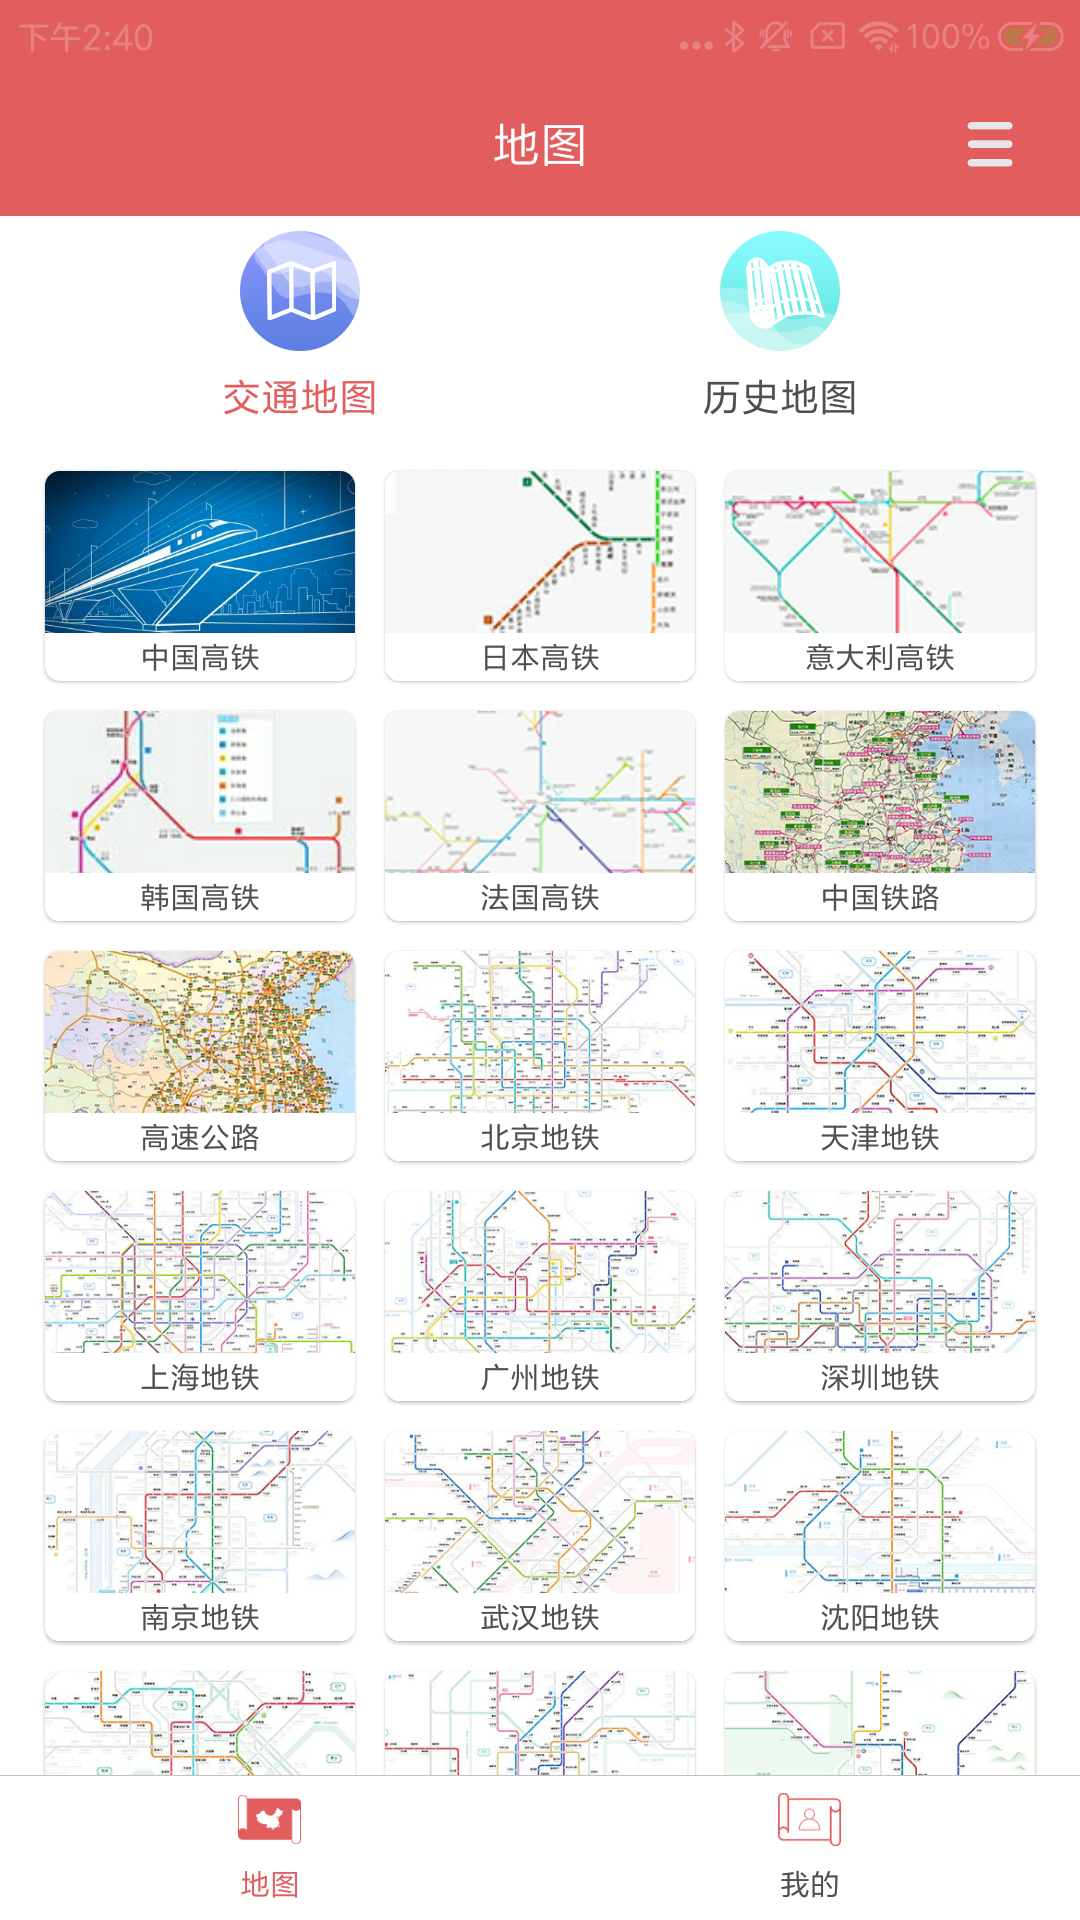 中国地图截图1